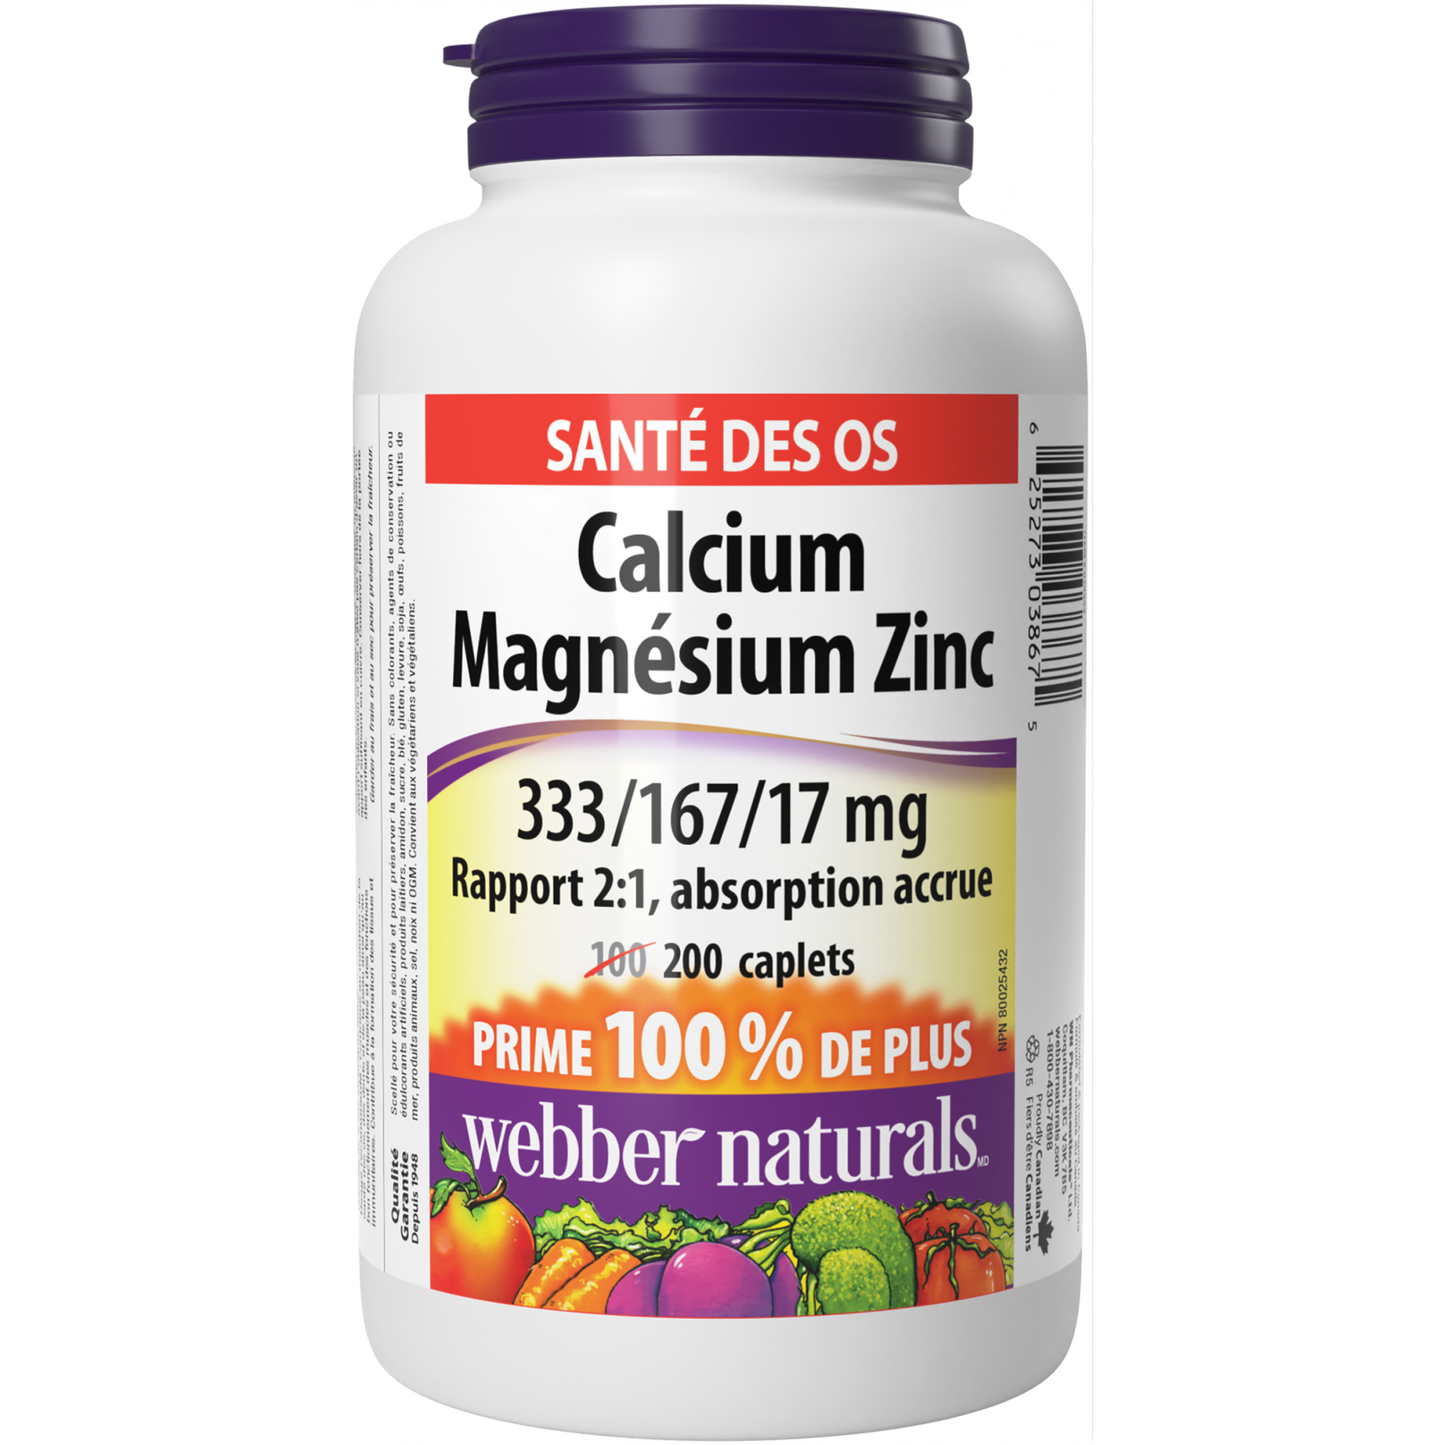 Calcium Magnésium Zinc Rapport 2:1, absorption accrue 333/167/17 mg for Webber Naturals|v|hi-res|WN3867